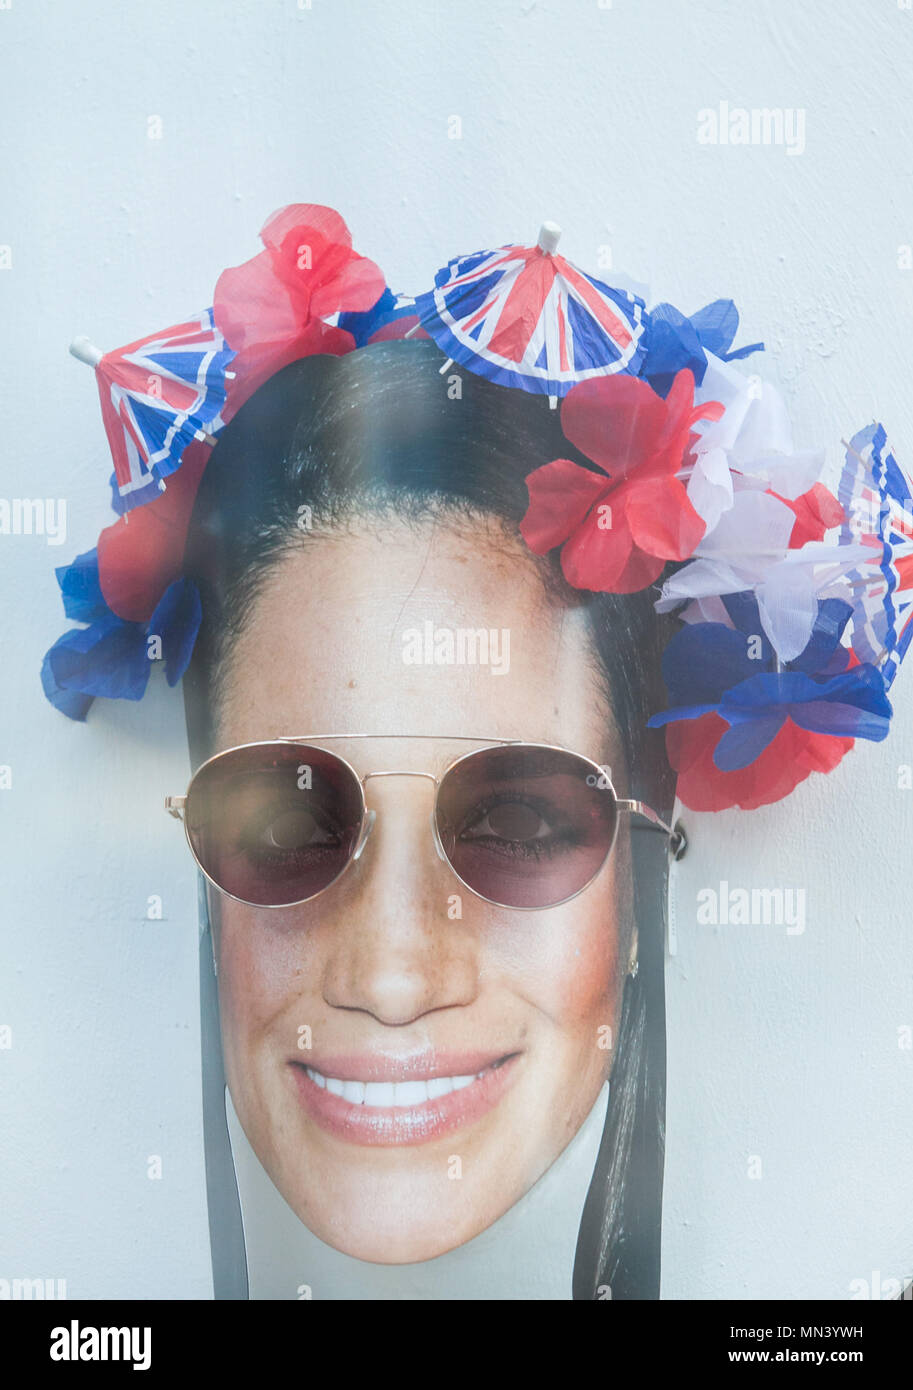 London UK. 14 mai 2018. Un portrait de Meghan Markle portant des lunettes  s'affiche sur la fenêtre d'un opticien de Londres comme le mariage royal  mania qui ravage la capitale avec quelques